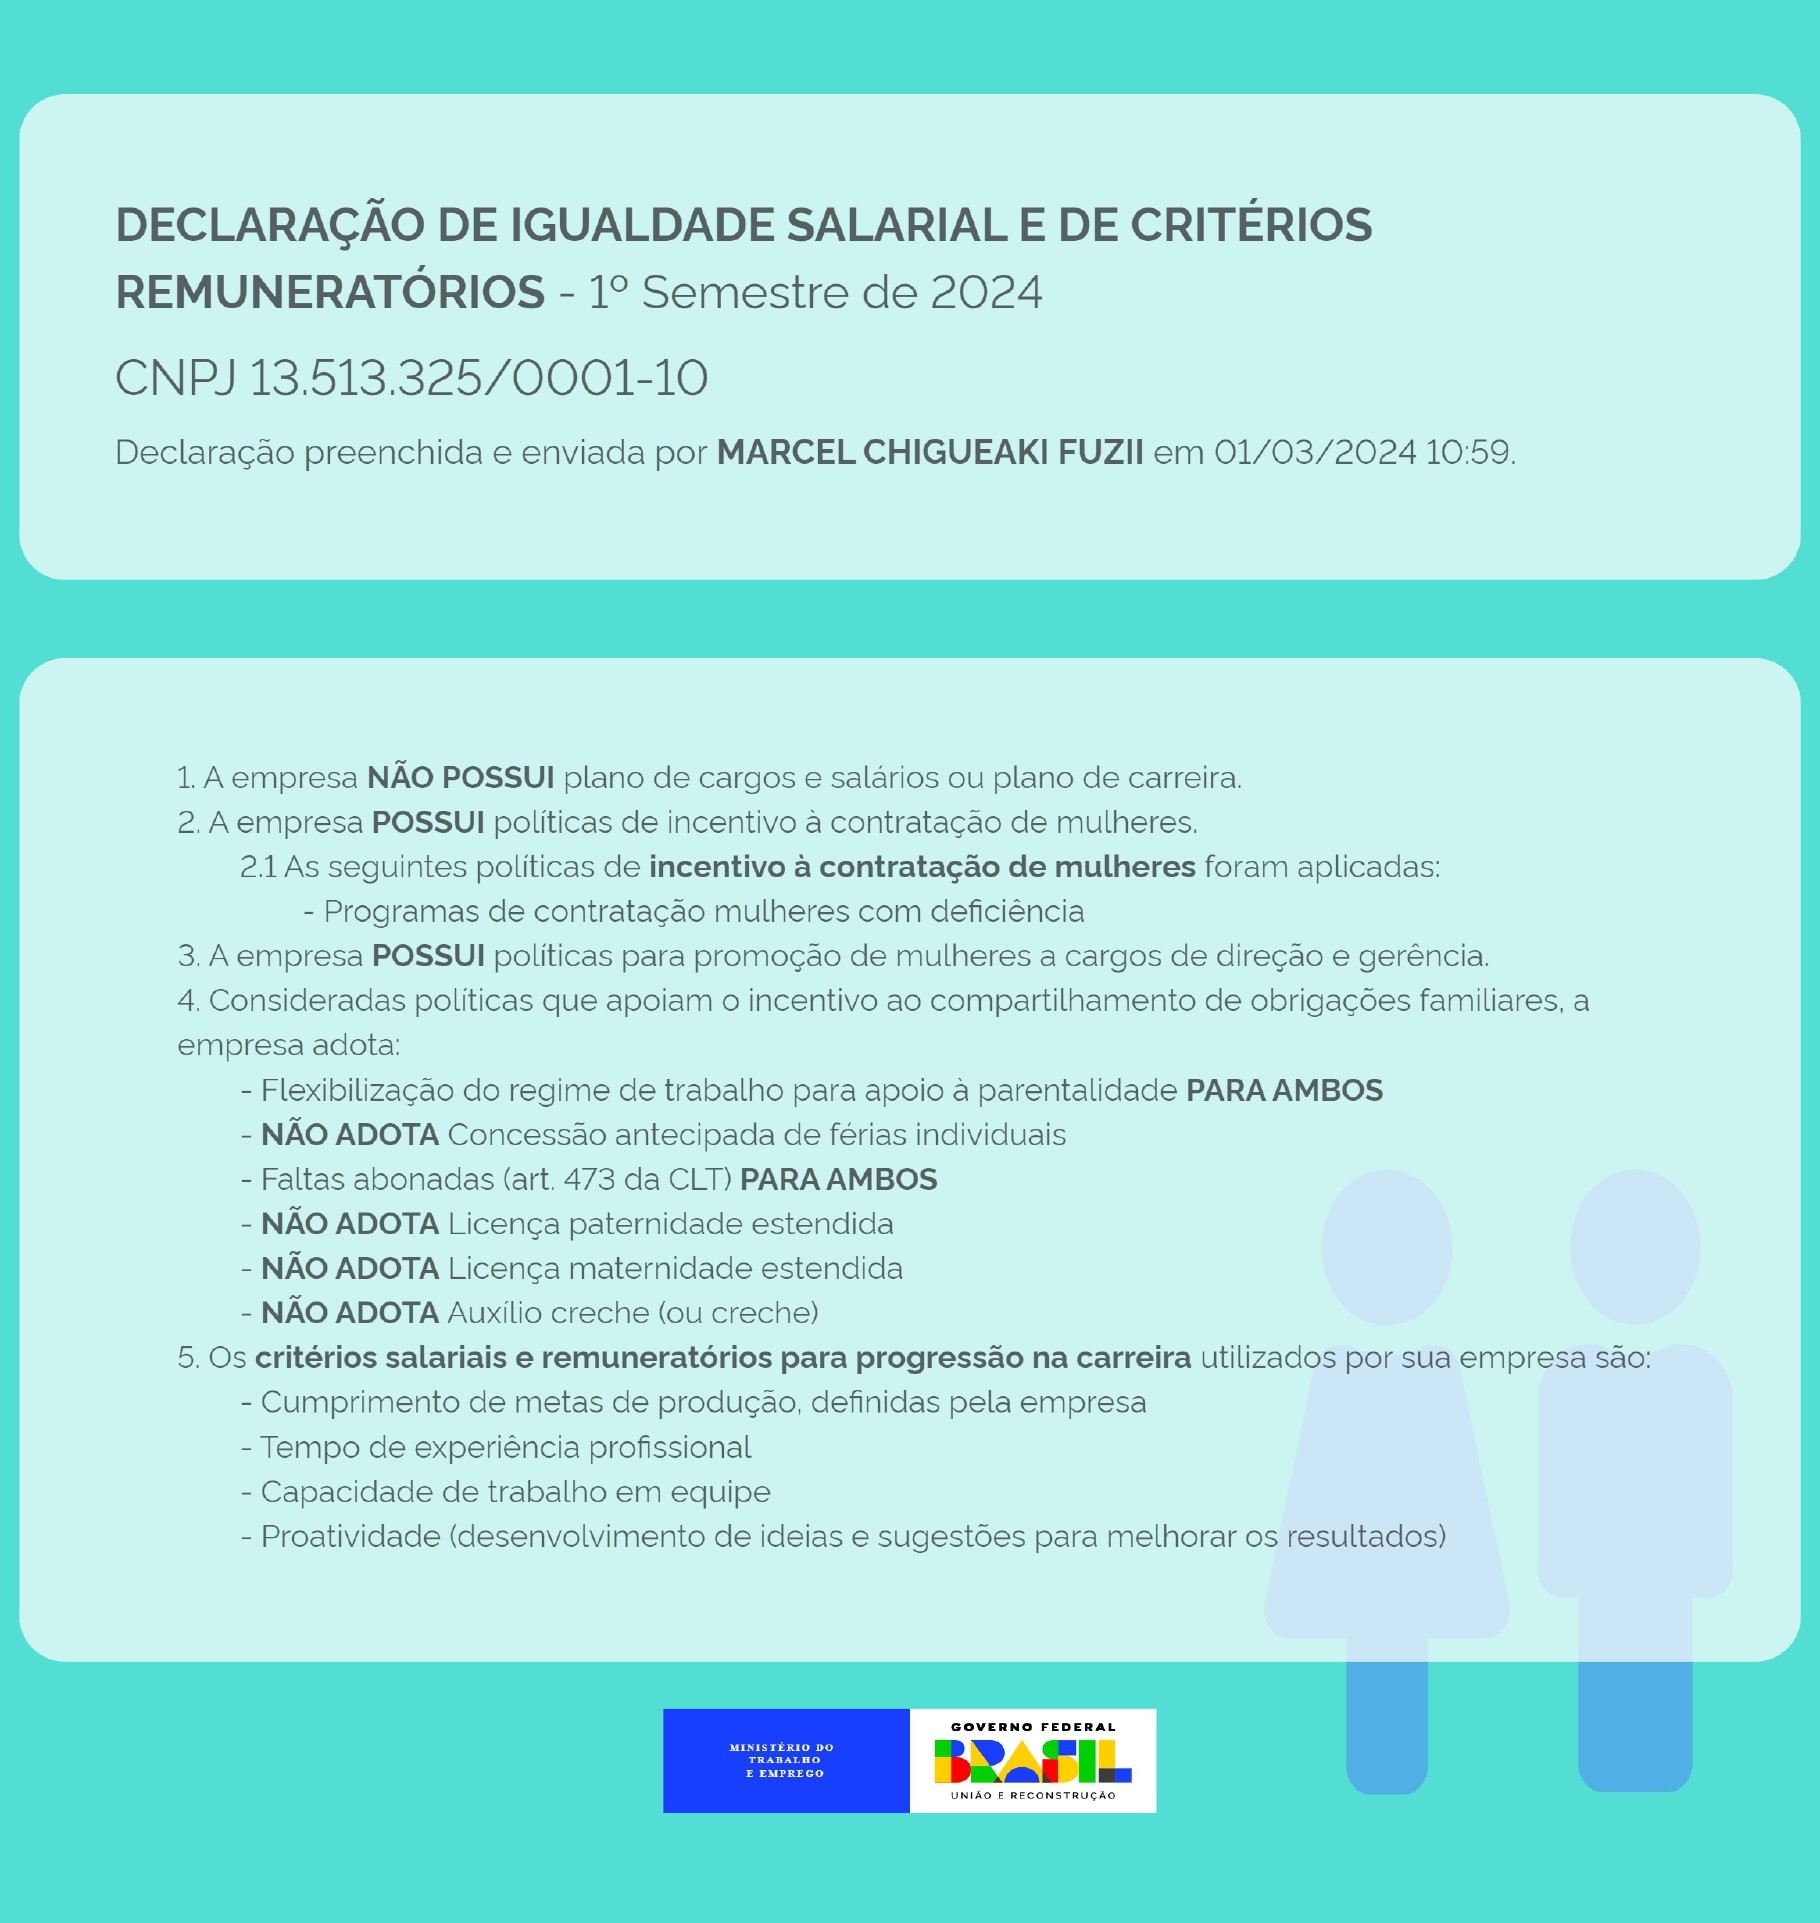 01 Relatorio Igualdade Salarial_page-0001.jpg